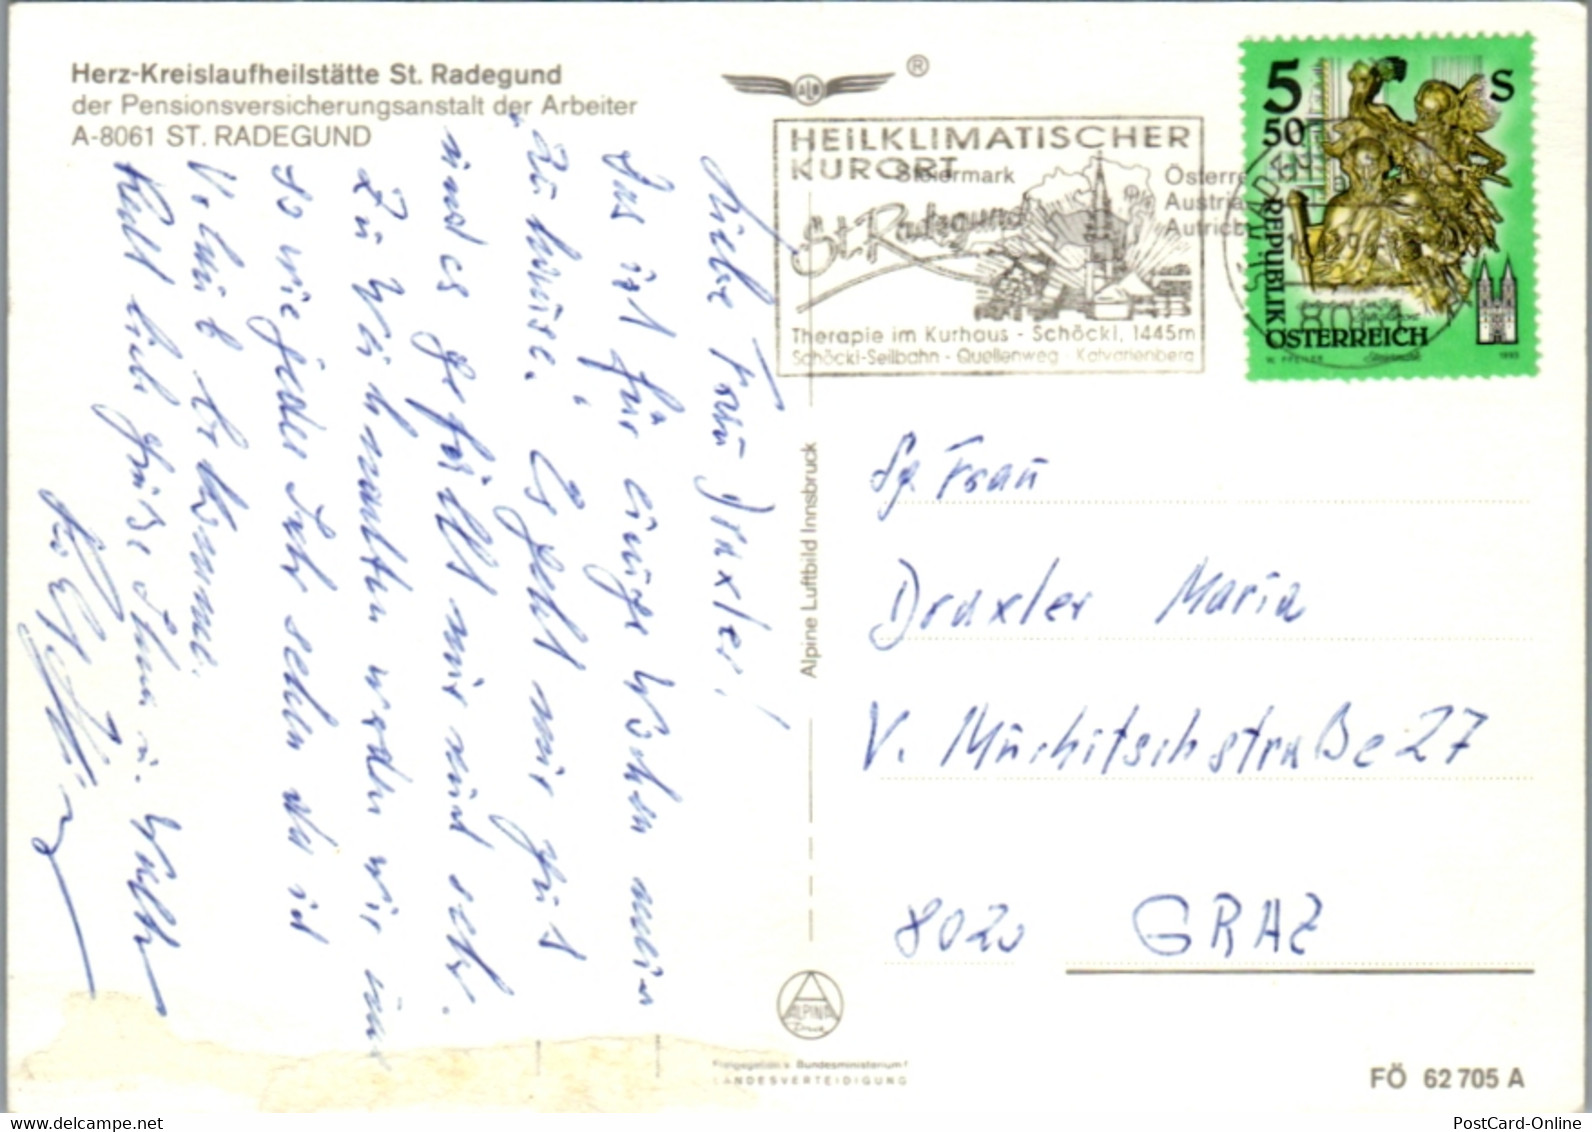 5152  - Steiermark , St. Radegund , P. V. A. , PVA , Herz Kreislauf Heilstätte - Gelaufen 1994 - St. Radegund